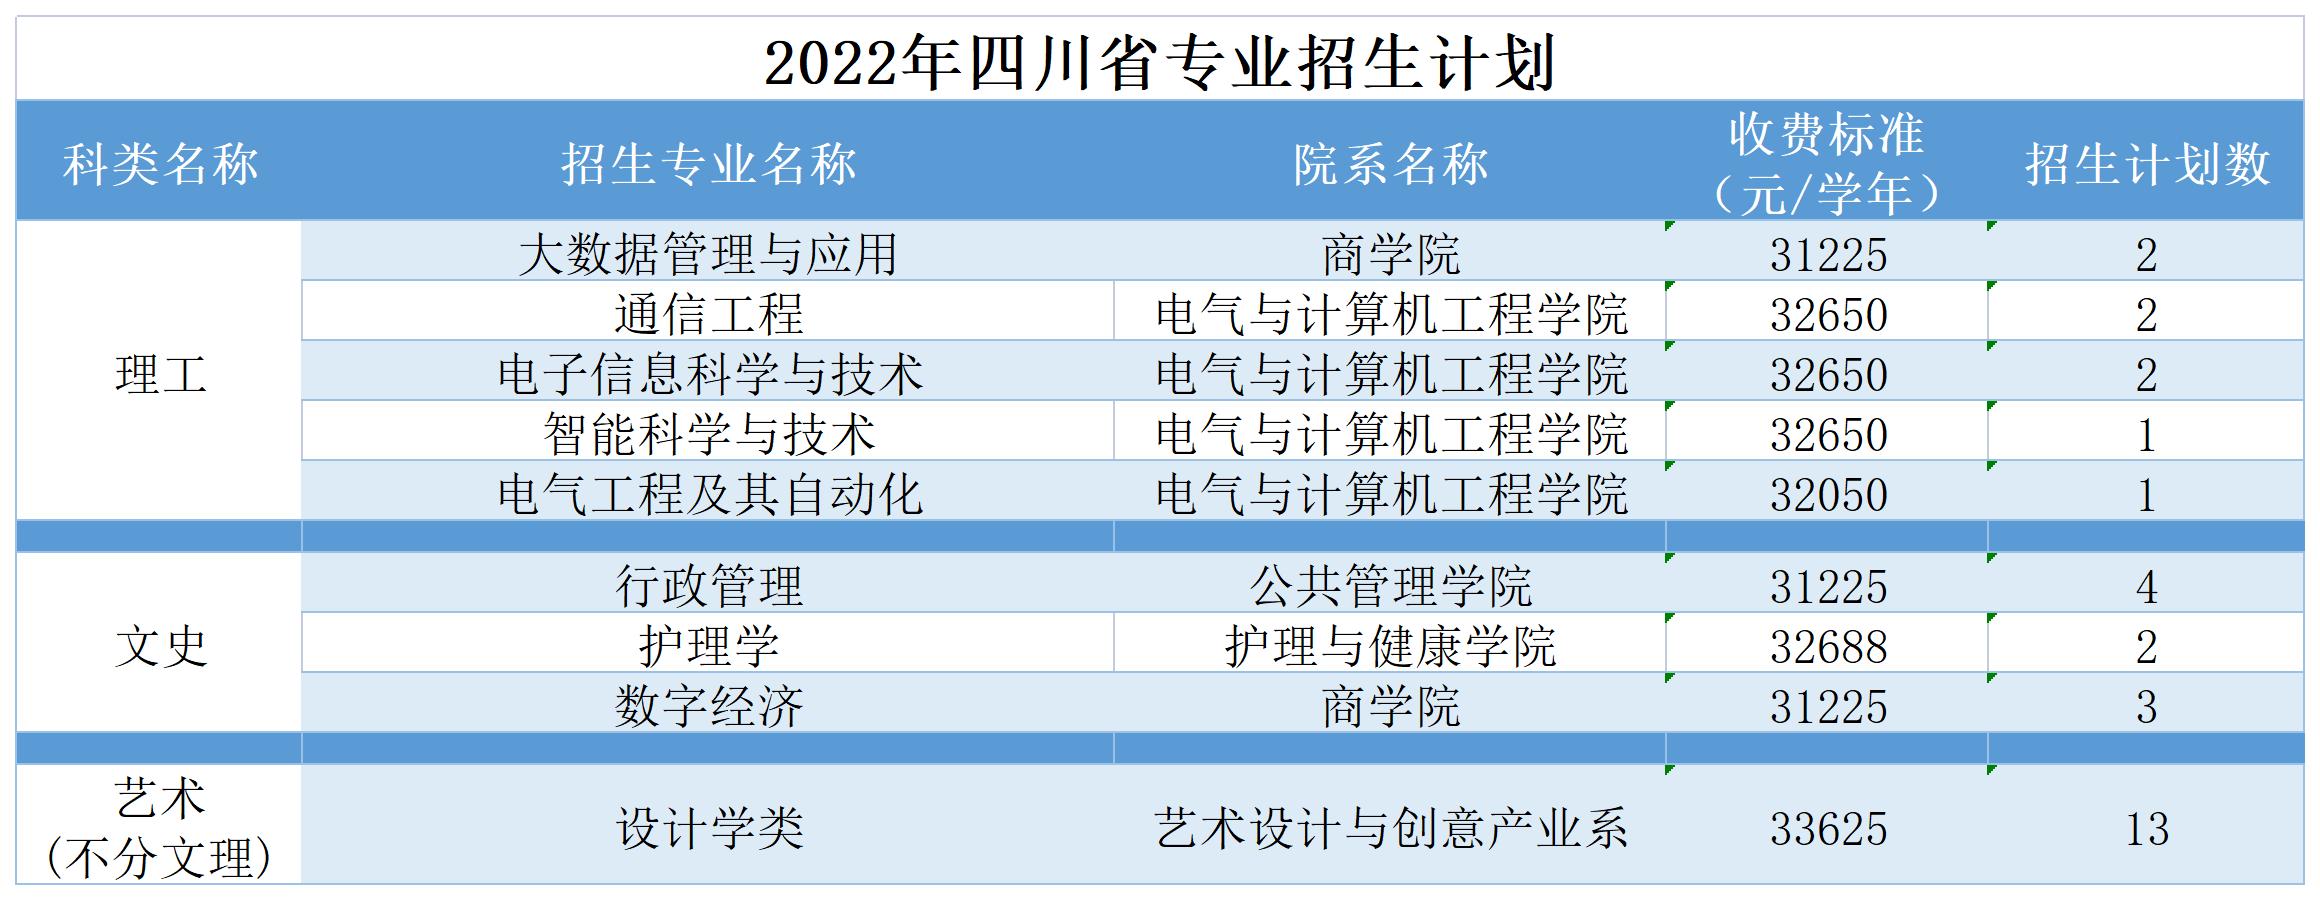 广州南方学院2022年四川省普高招生计划